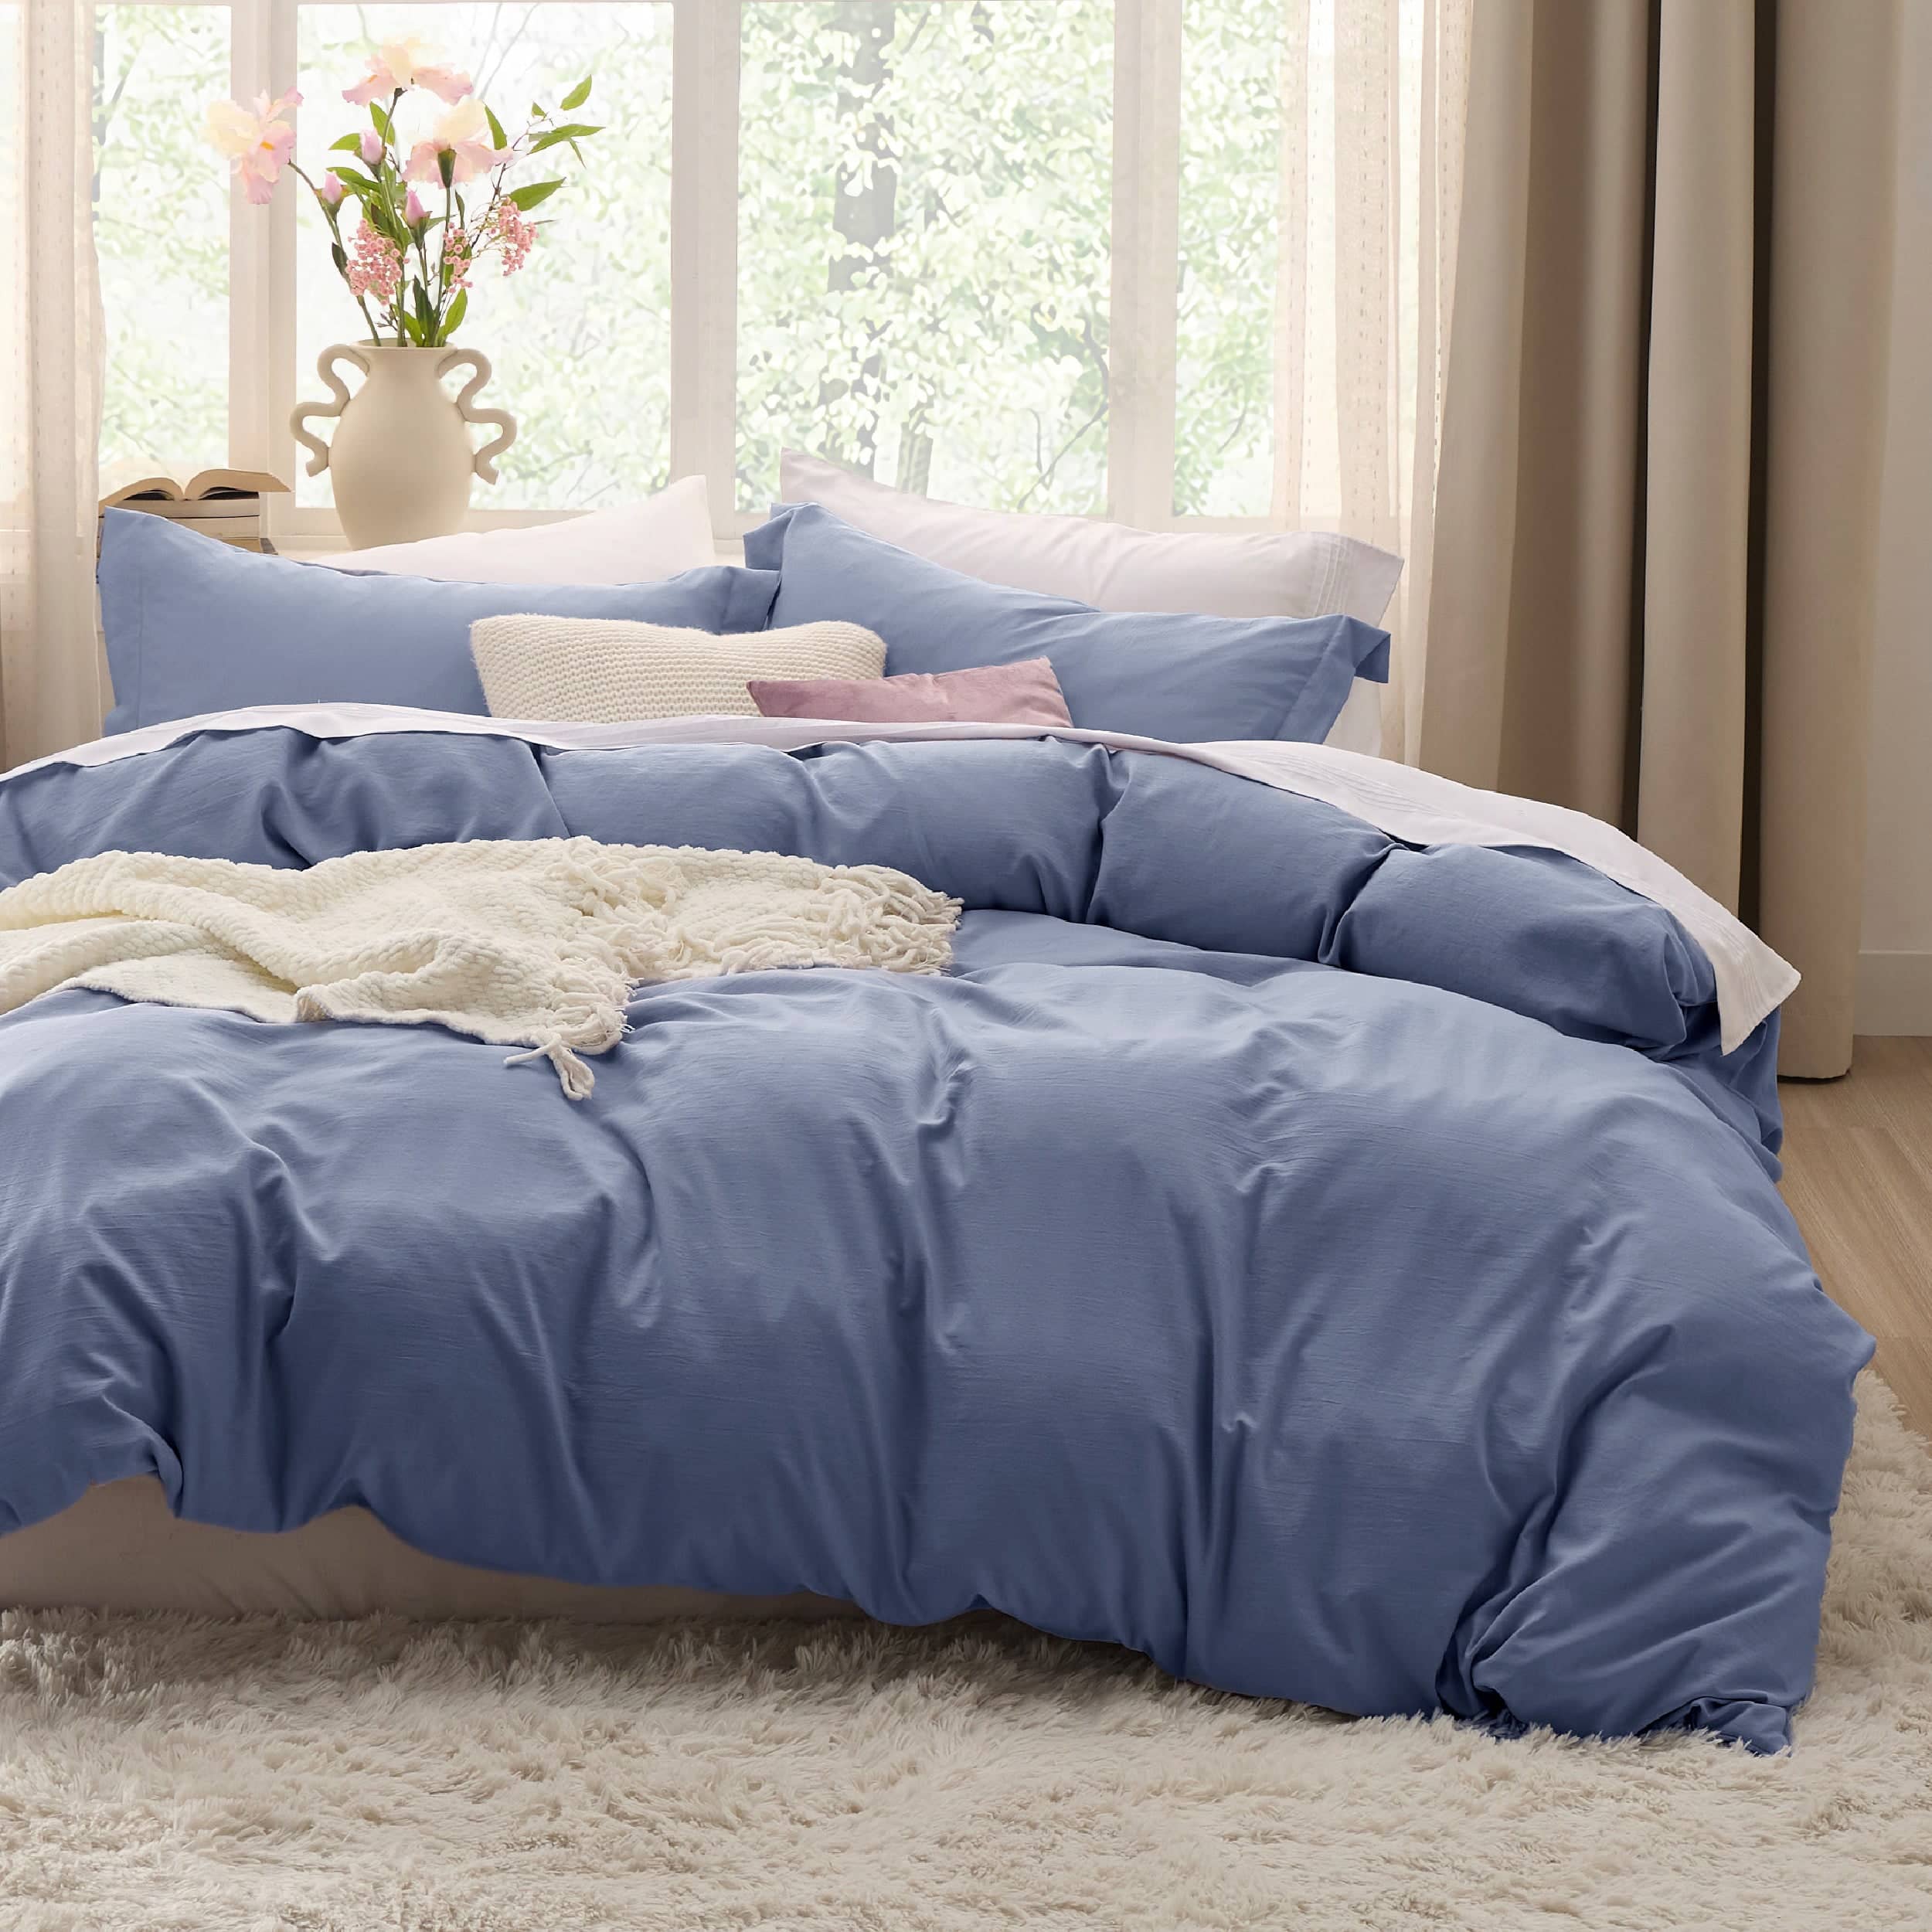 Bedsure Fluffy Comforter Cover Set - Faux Fur Duvet Cover Queen Size, Deep  Beige Plush Quilt Cover, …See more Bedsure Fluffy Comforter Cover Set 